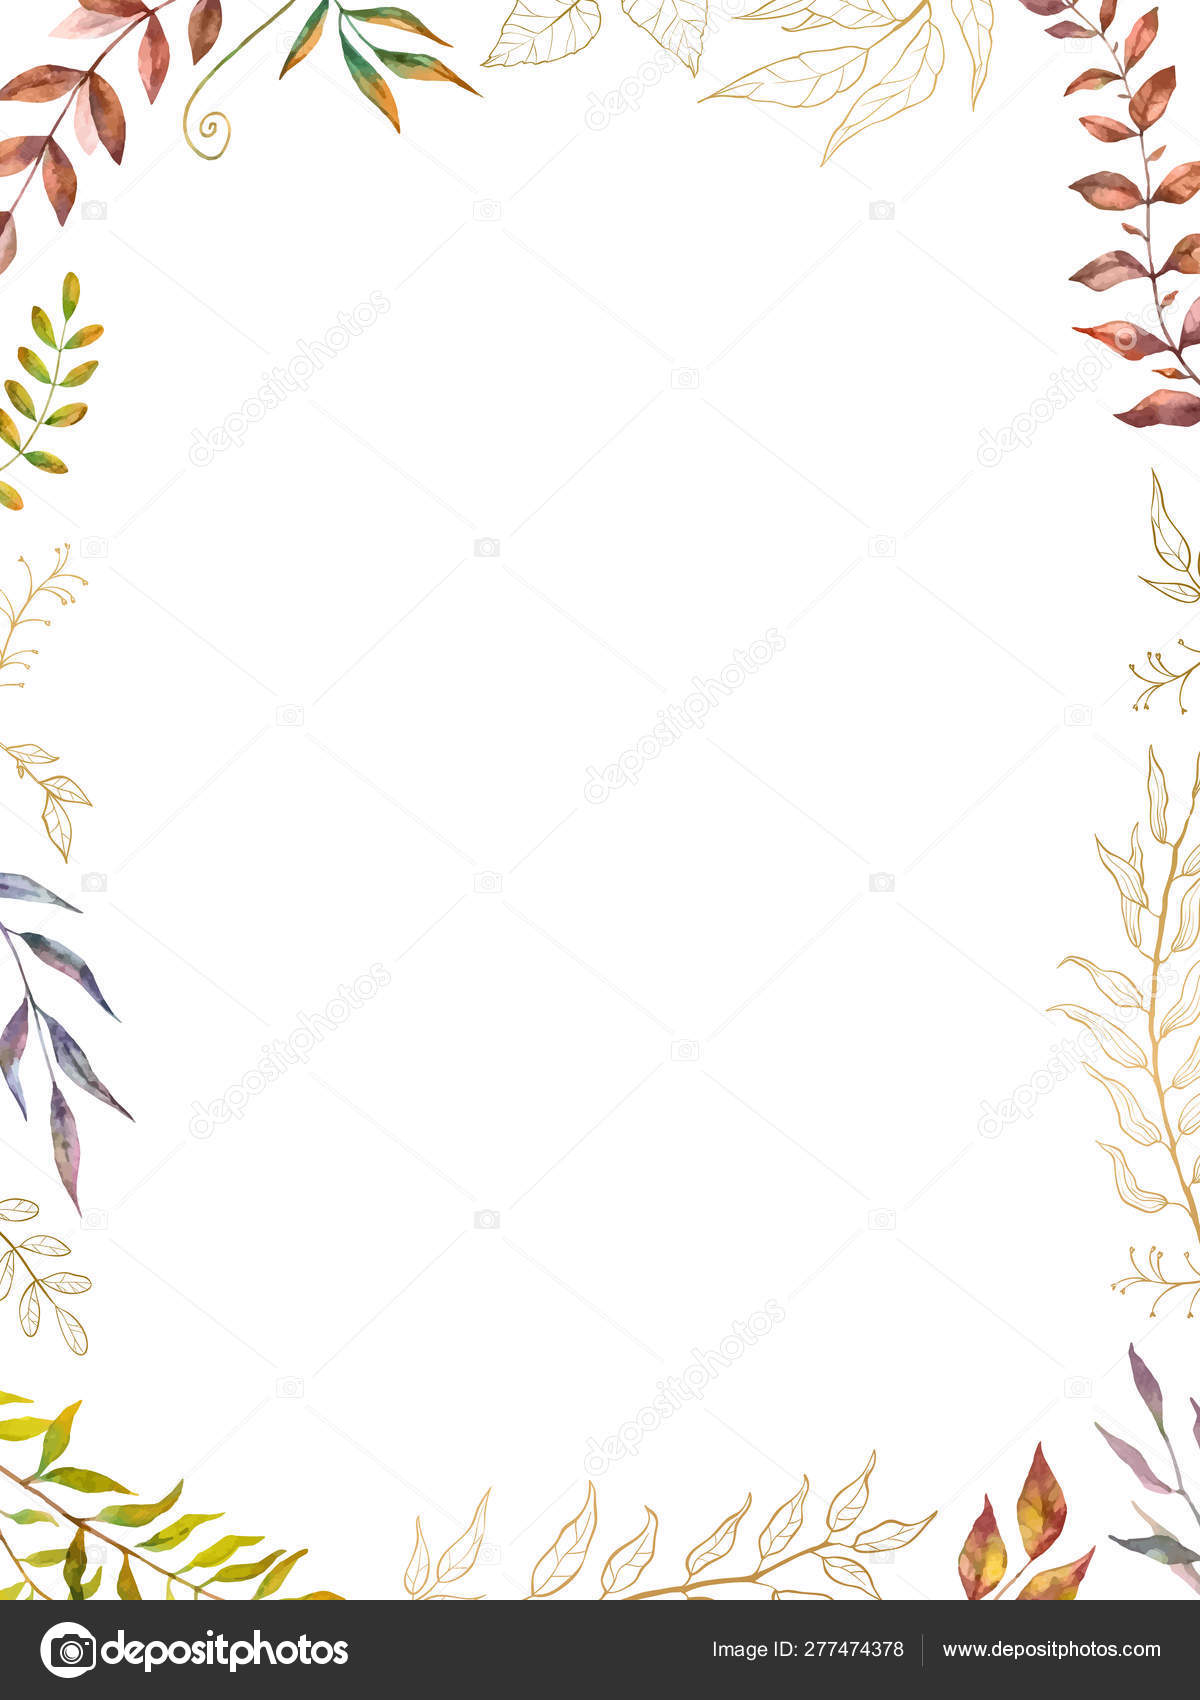 水彩画ハーブミックスベクトルフレーム 白い背景に手描きの植物 枝や